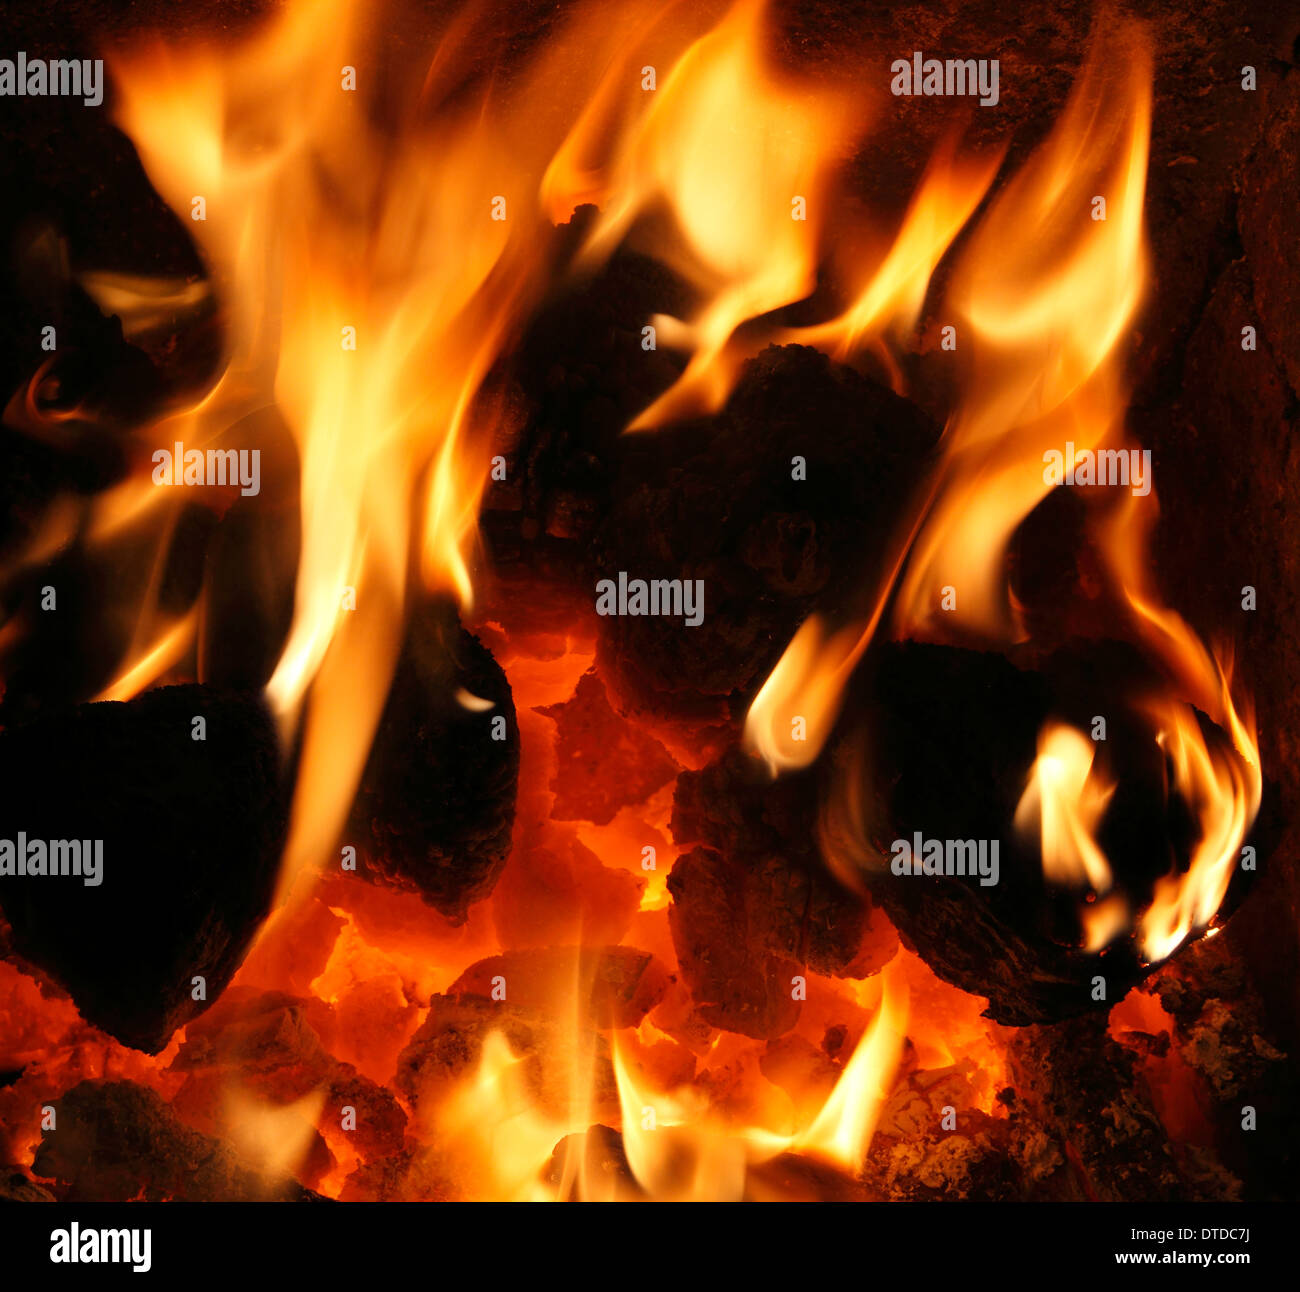 Il combustibile solido, carbone nazionale Fire, bruciando, fiamme, fiamme cuore fireside energia termica incendi di potenza di calore caldo home incendi Foto Stock